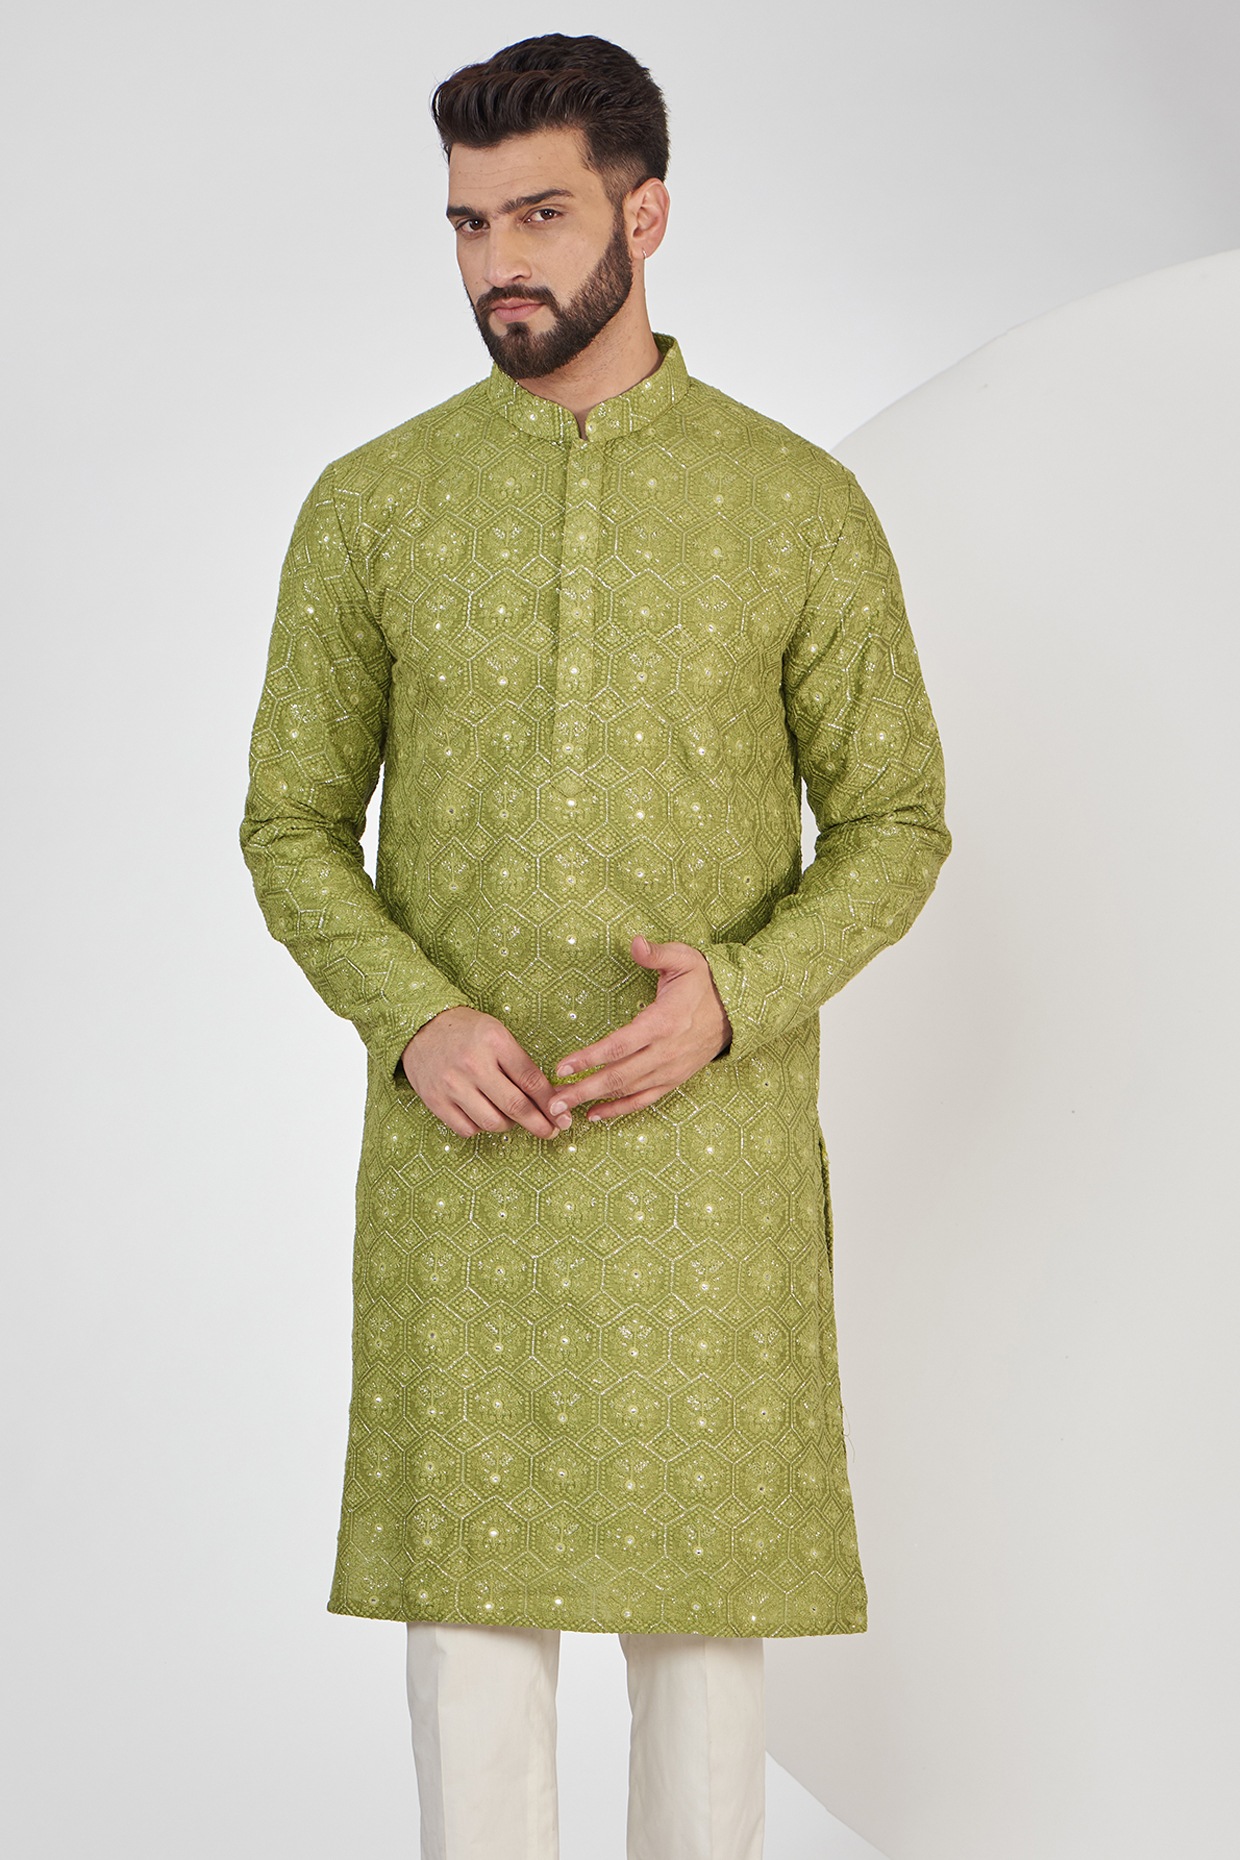 Mehndi Kurta Pajama Styles for Men | Custom Made – Uomo Attire